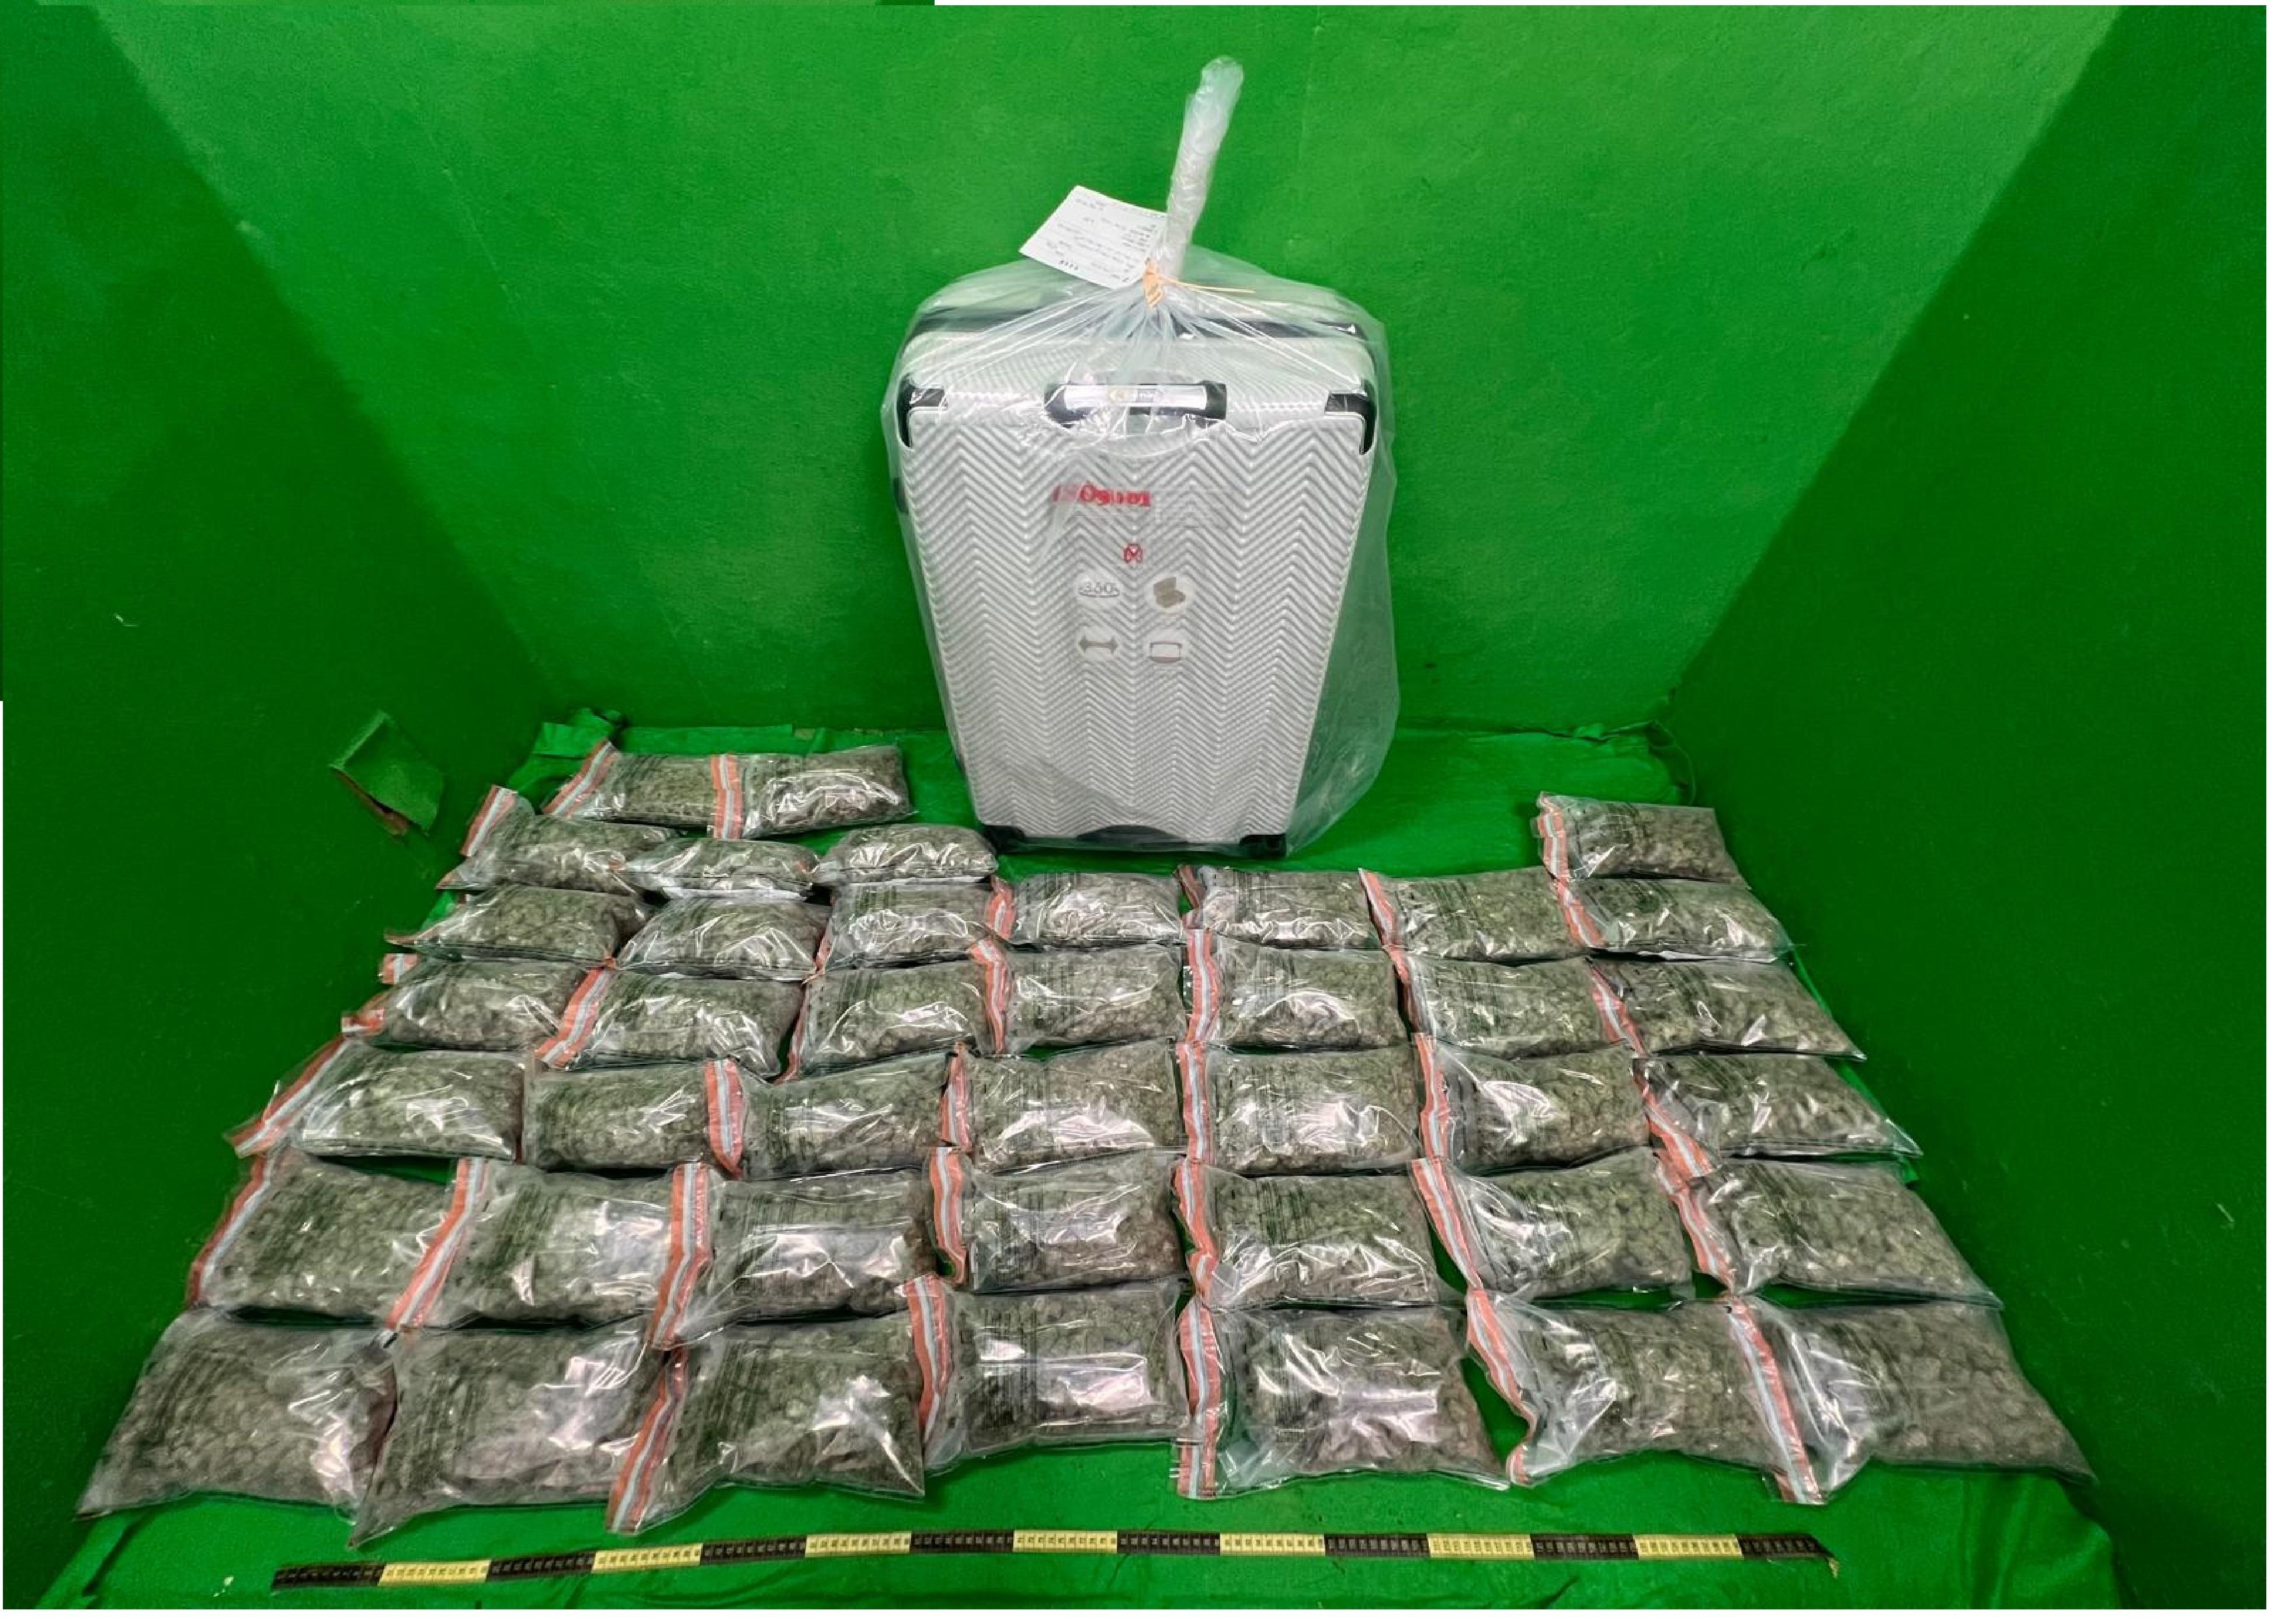 檢獲的懷疑大麻花及用作收藏毒品的行李箱。